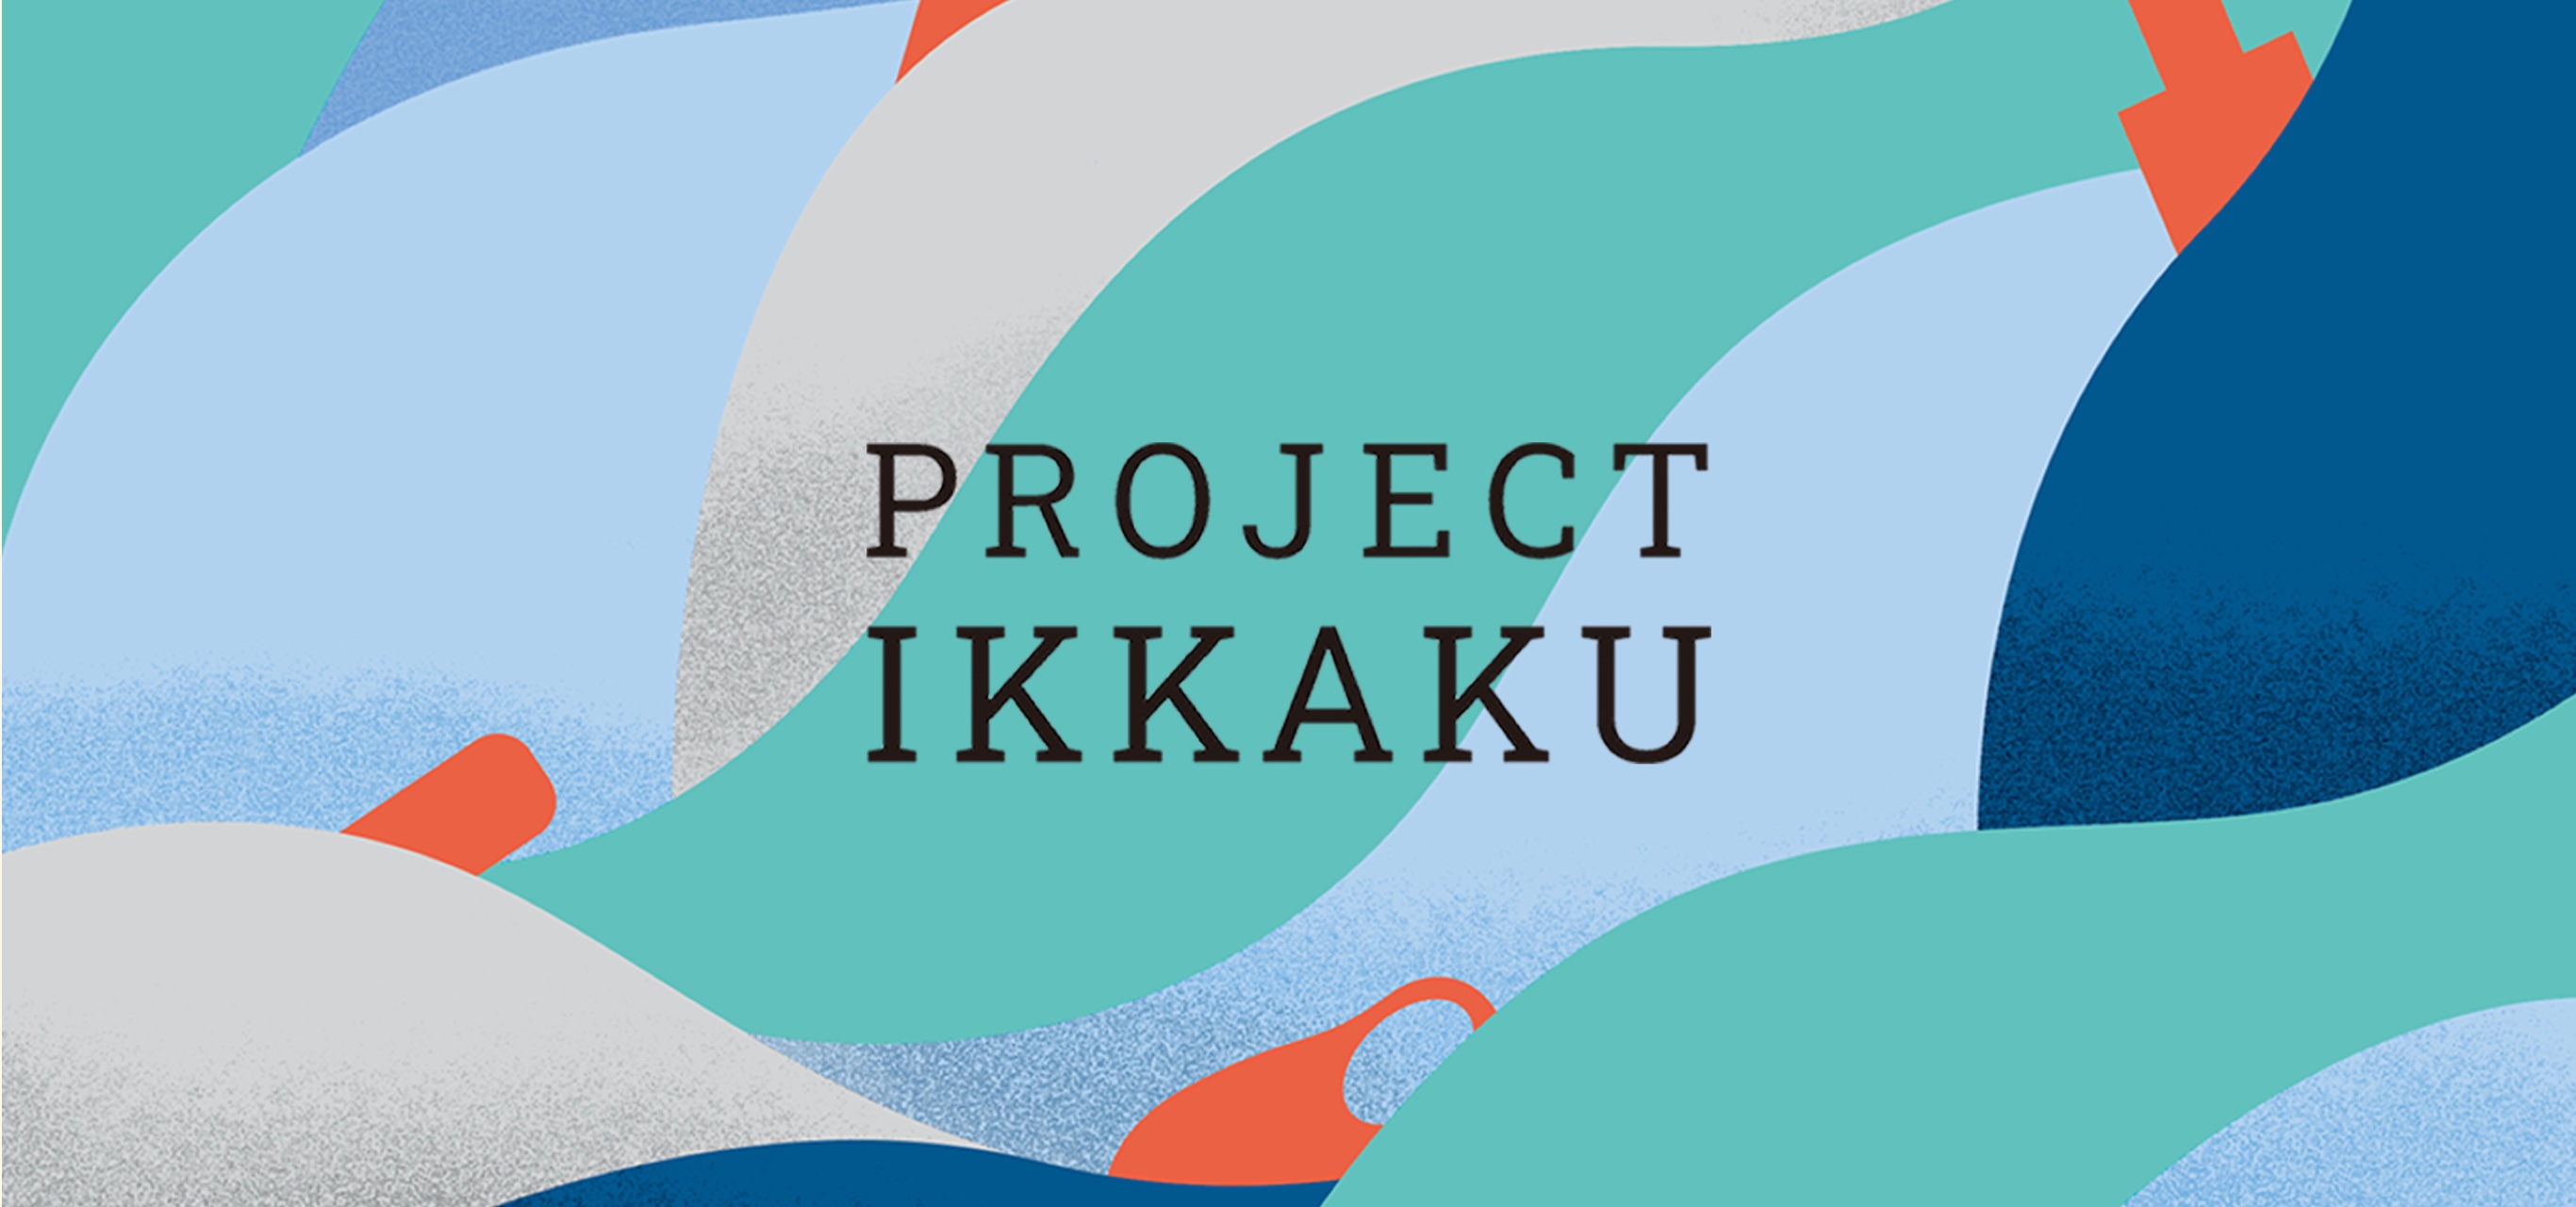 画像：スライドのメインビジュアルと「PROJECT IKKAKU」の文字。